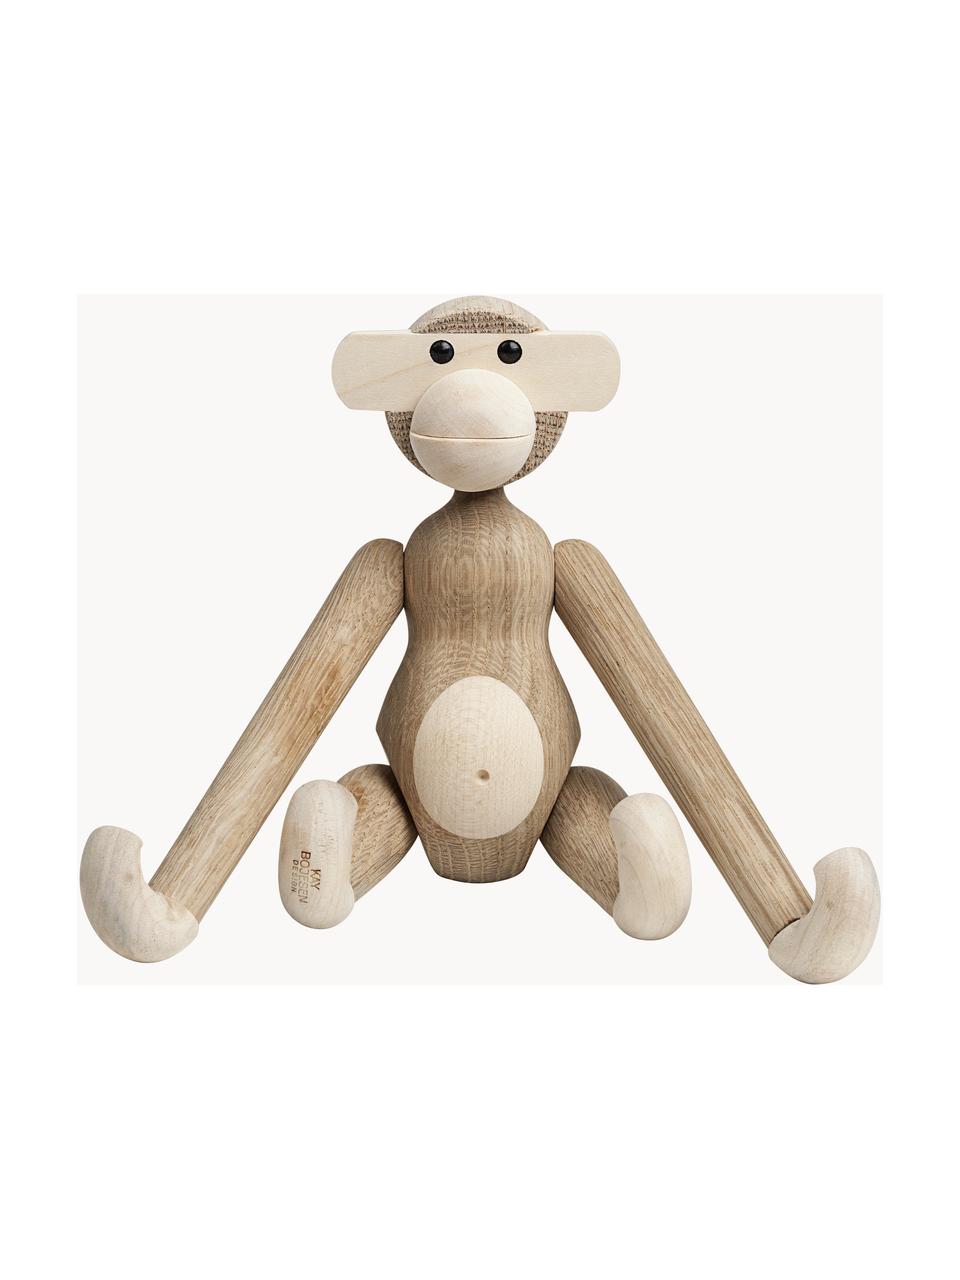 Handgefertigtes Deko-Objekt Monkey aus Eichenholz, H 19 cm, Eichenholz, Ahornholz, lackiert

Dieses Produkt wird aus nachhaltig gewonnenem, FSC®-zertifiziertem Holz gefertigt., Eichenholz, Ahornholz, B 20 x H 19 cm